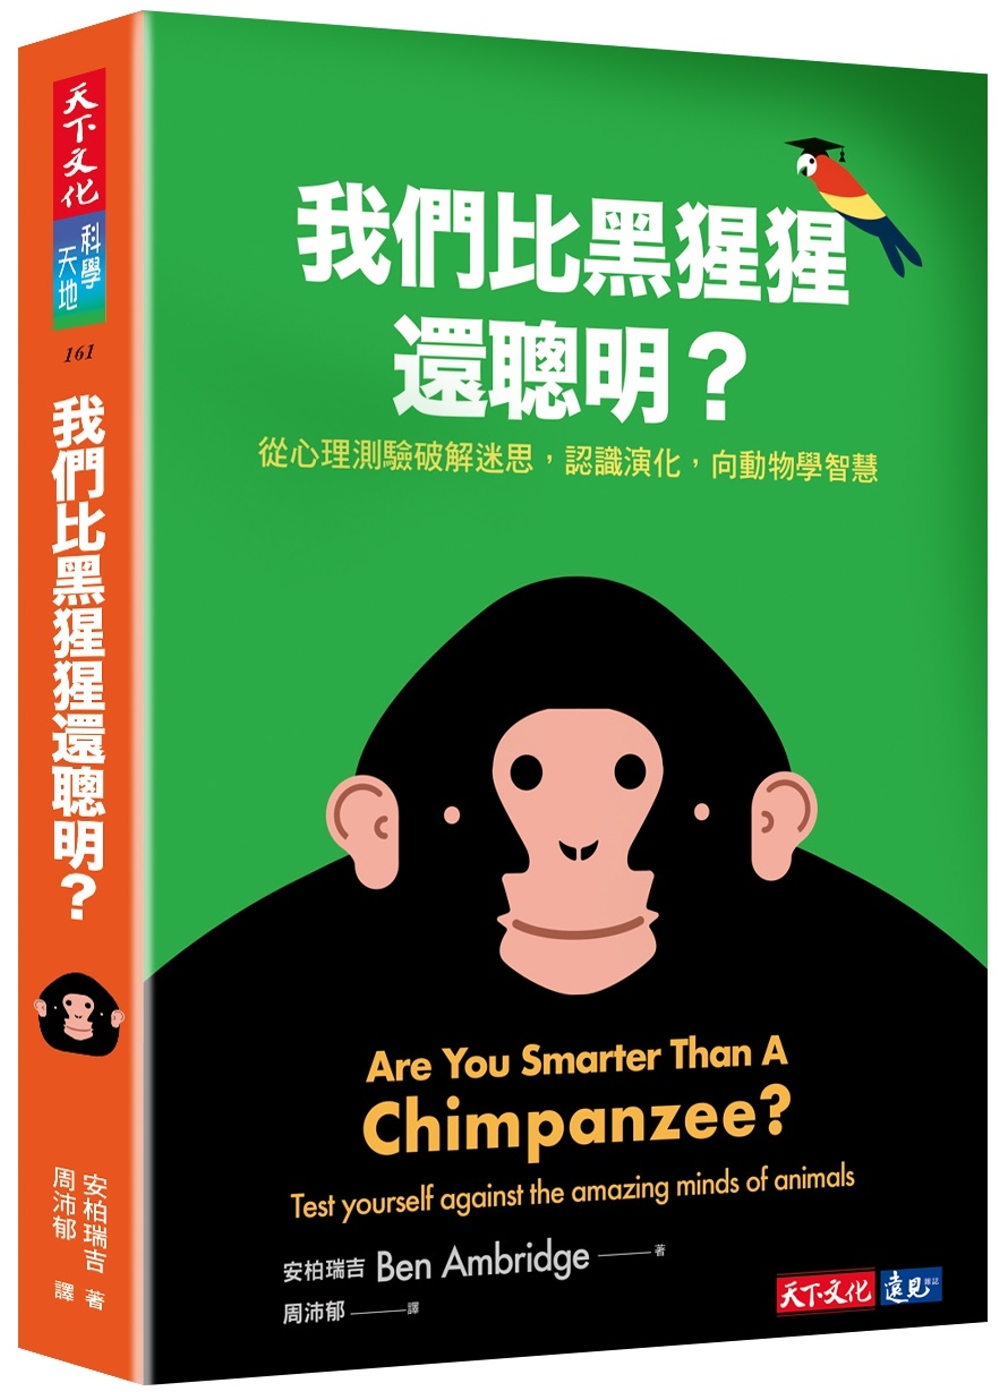 我們比黑猩猩還聰明?：從心理測驗破解迷思，認識演化，向動物學智慧